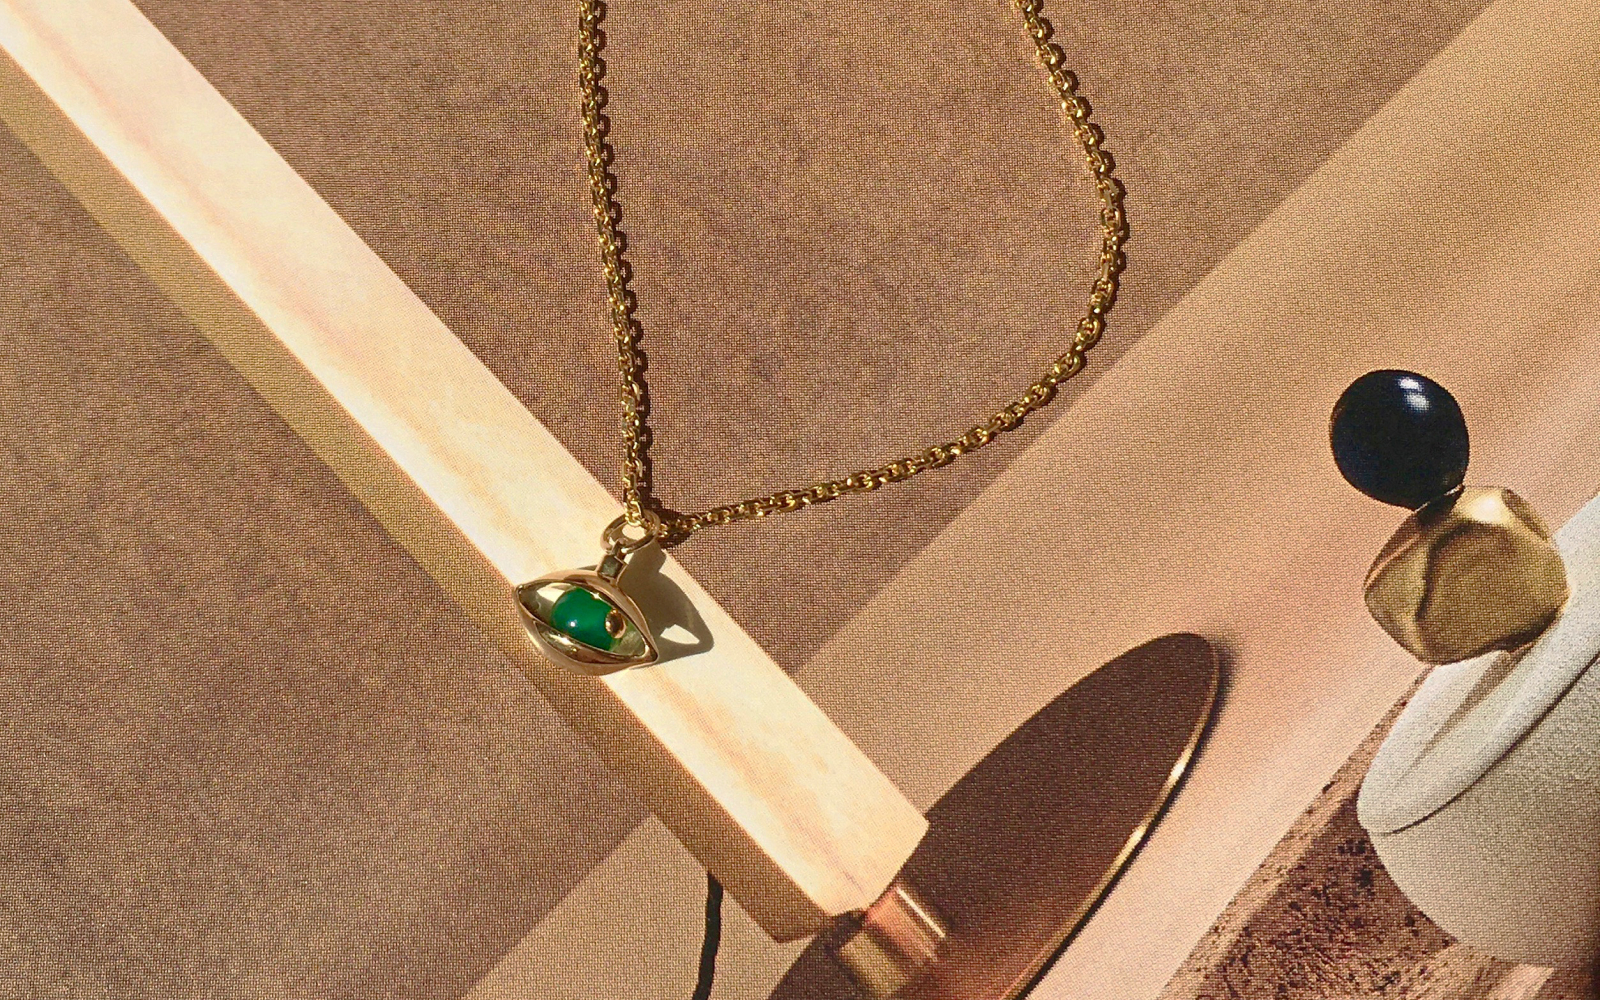 Zeemou Zeng Mini Eye unisex pendant necklace in 18k yellow gold with green chalcedony